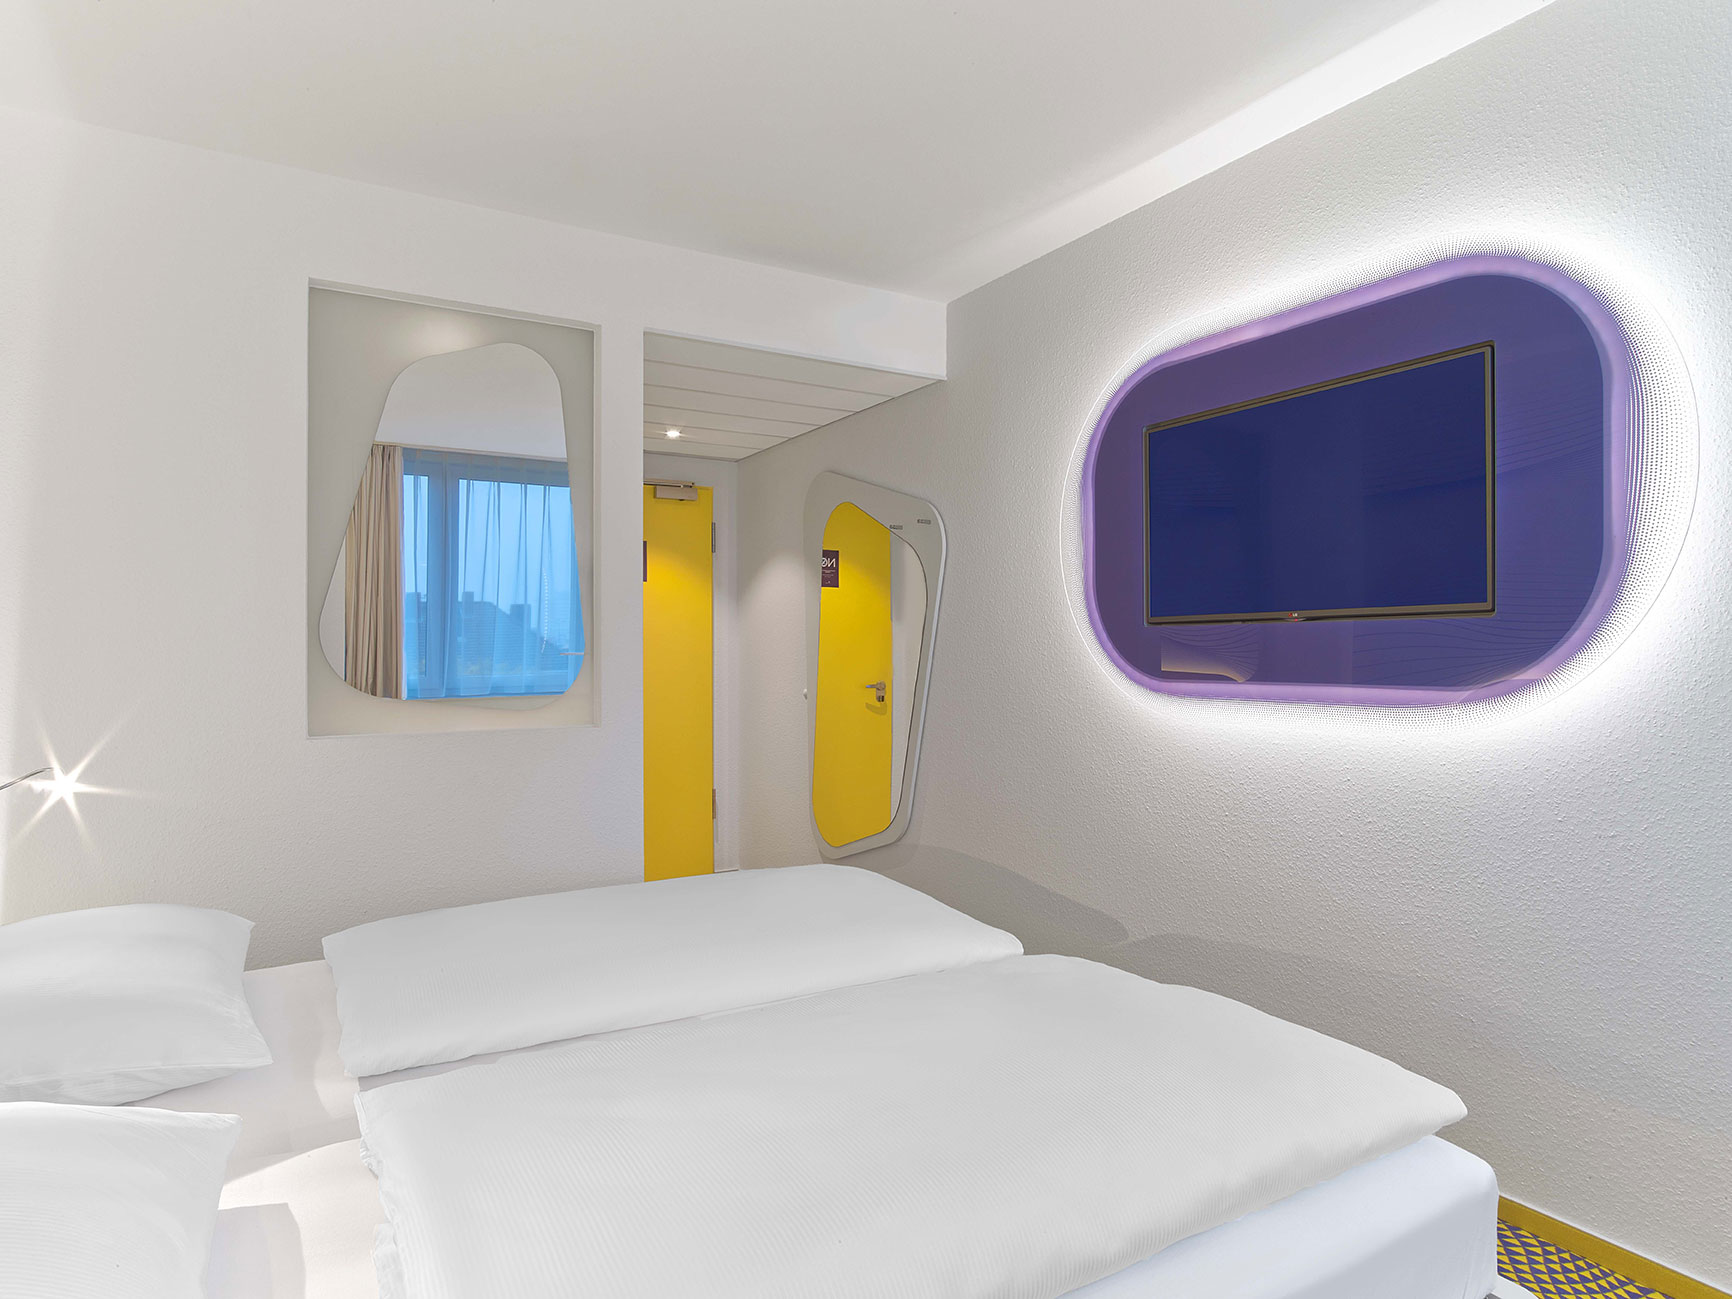 Doppelzimmer des Designhotels mit Fernseher im violetten Sideboard